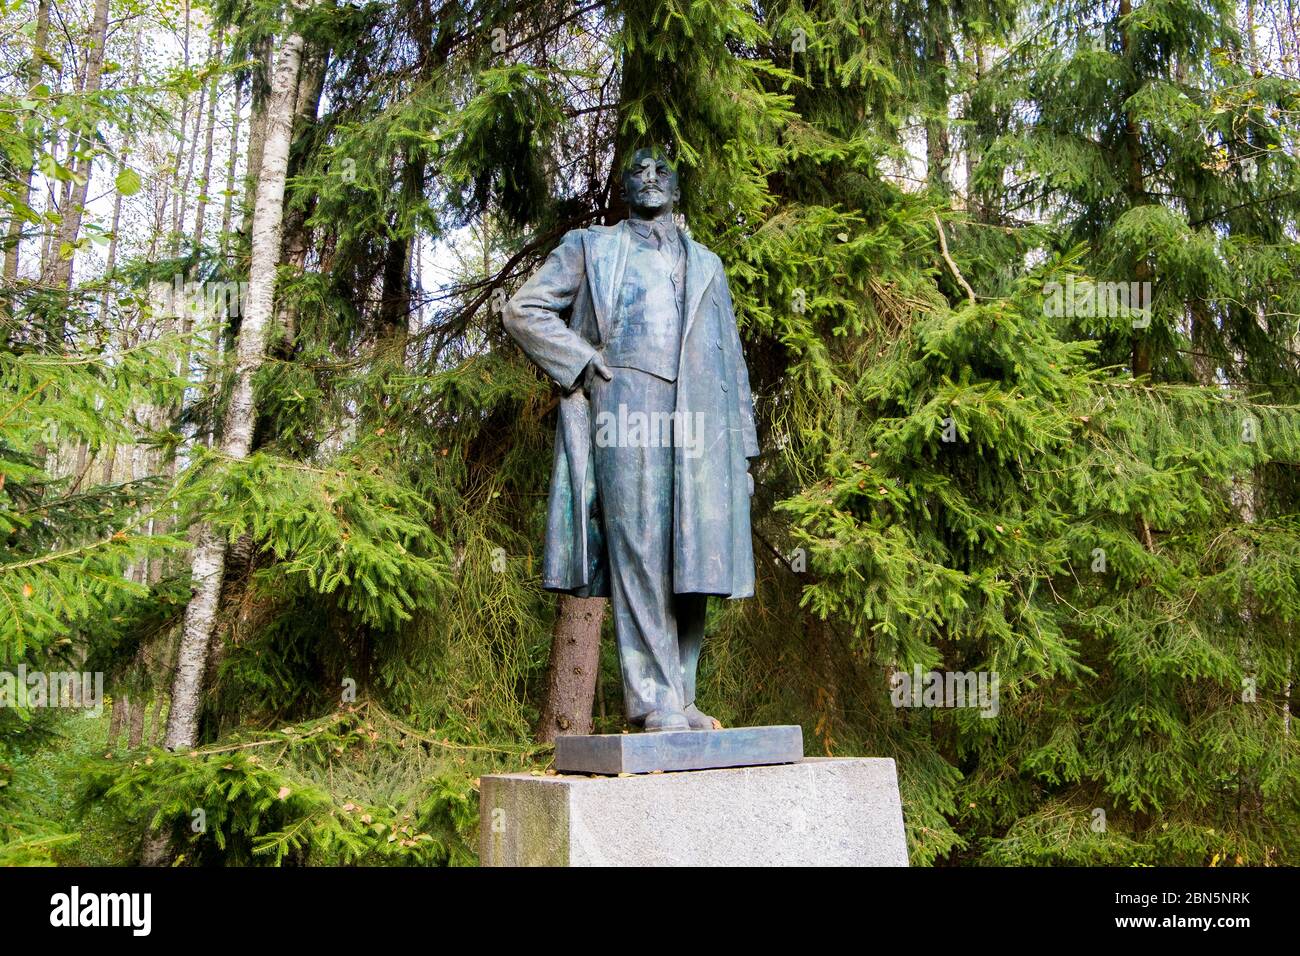 Eine große Bronzestatue Lenins, teilweise von Bäumen verdeckt. In Gruto Parkas bei Druskininkai, Litauen. Stockfoto